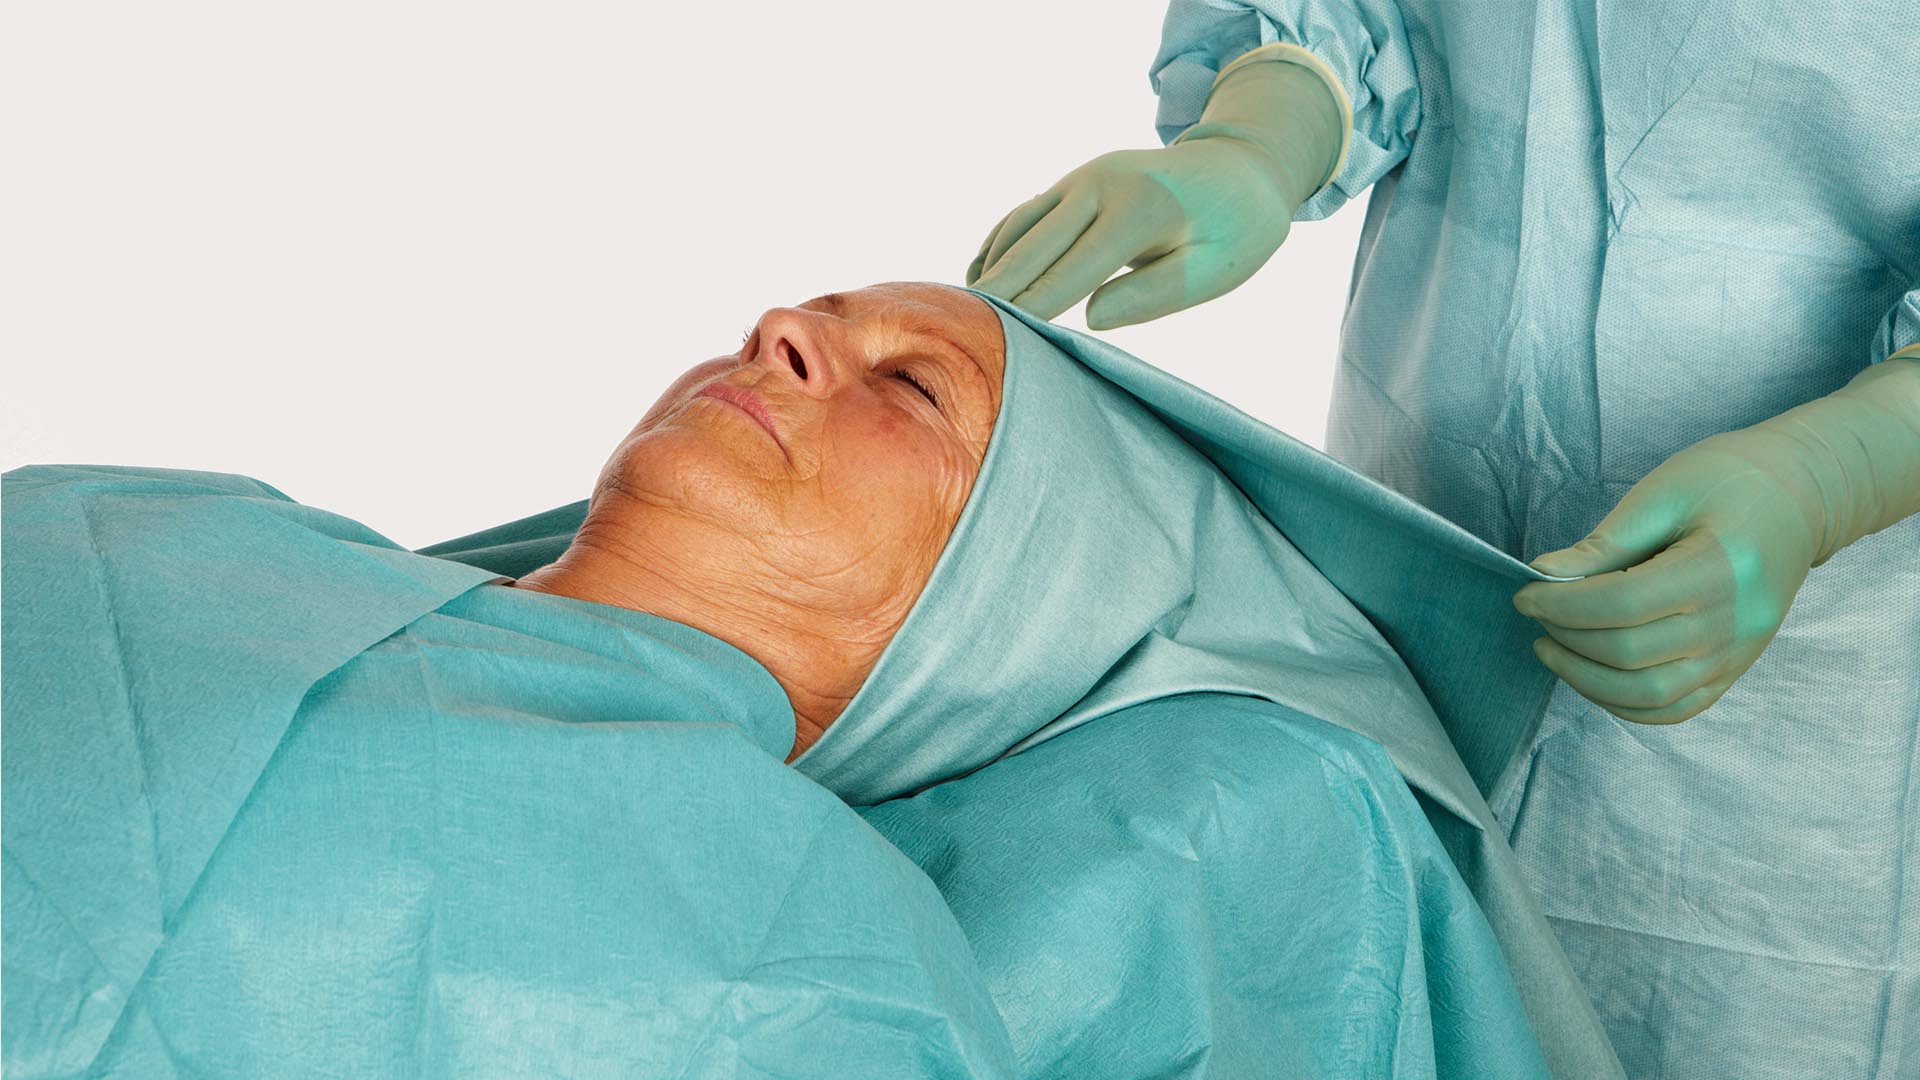 cabeza de una paciente envuelta en un paño otorrinolaringológico BARRIER